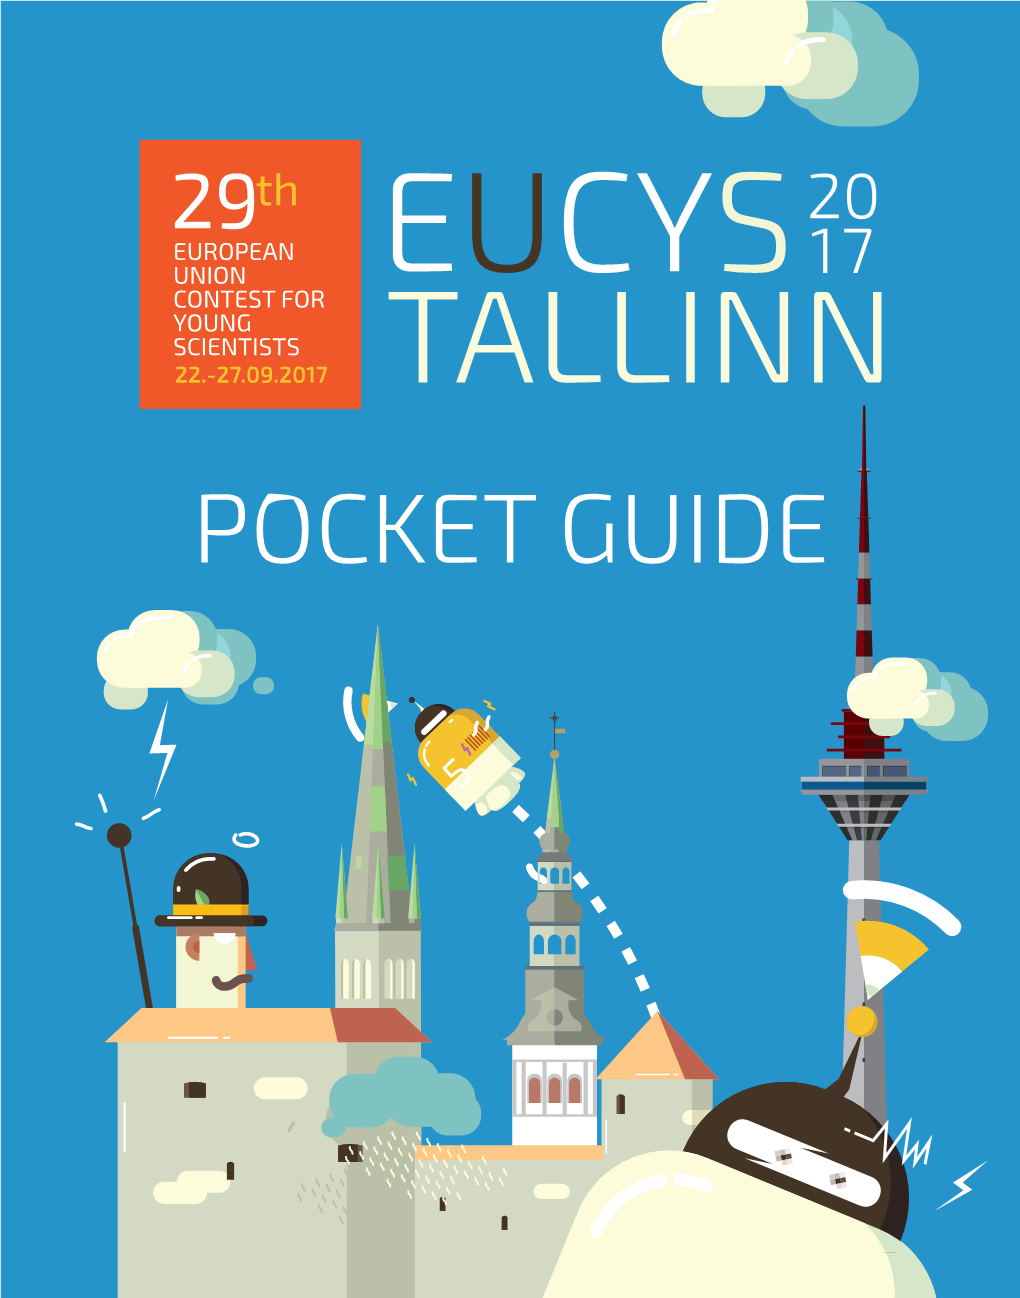 EUCYS 2017 Pocket Guide